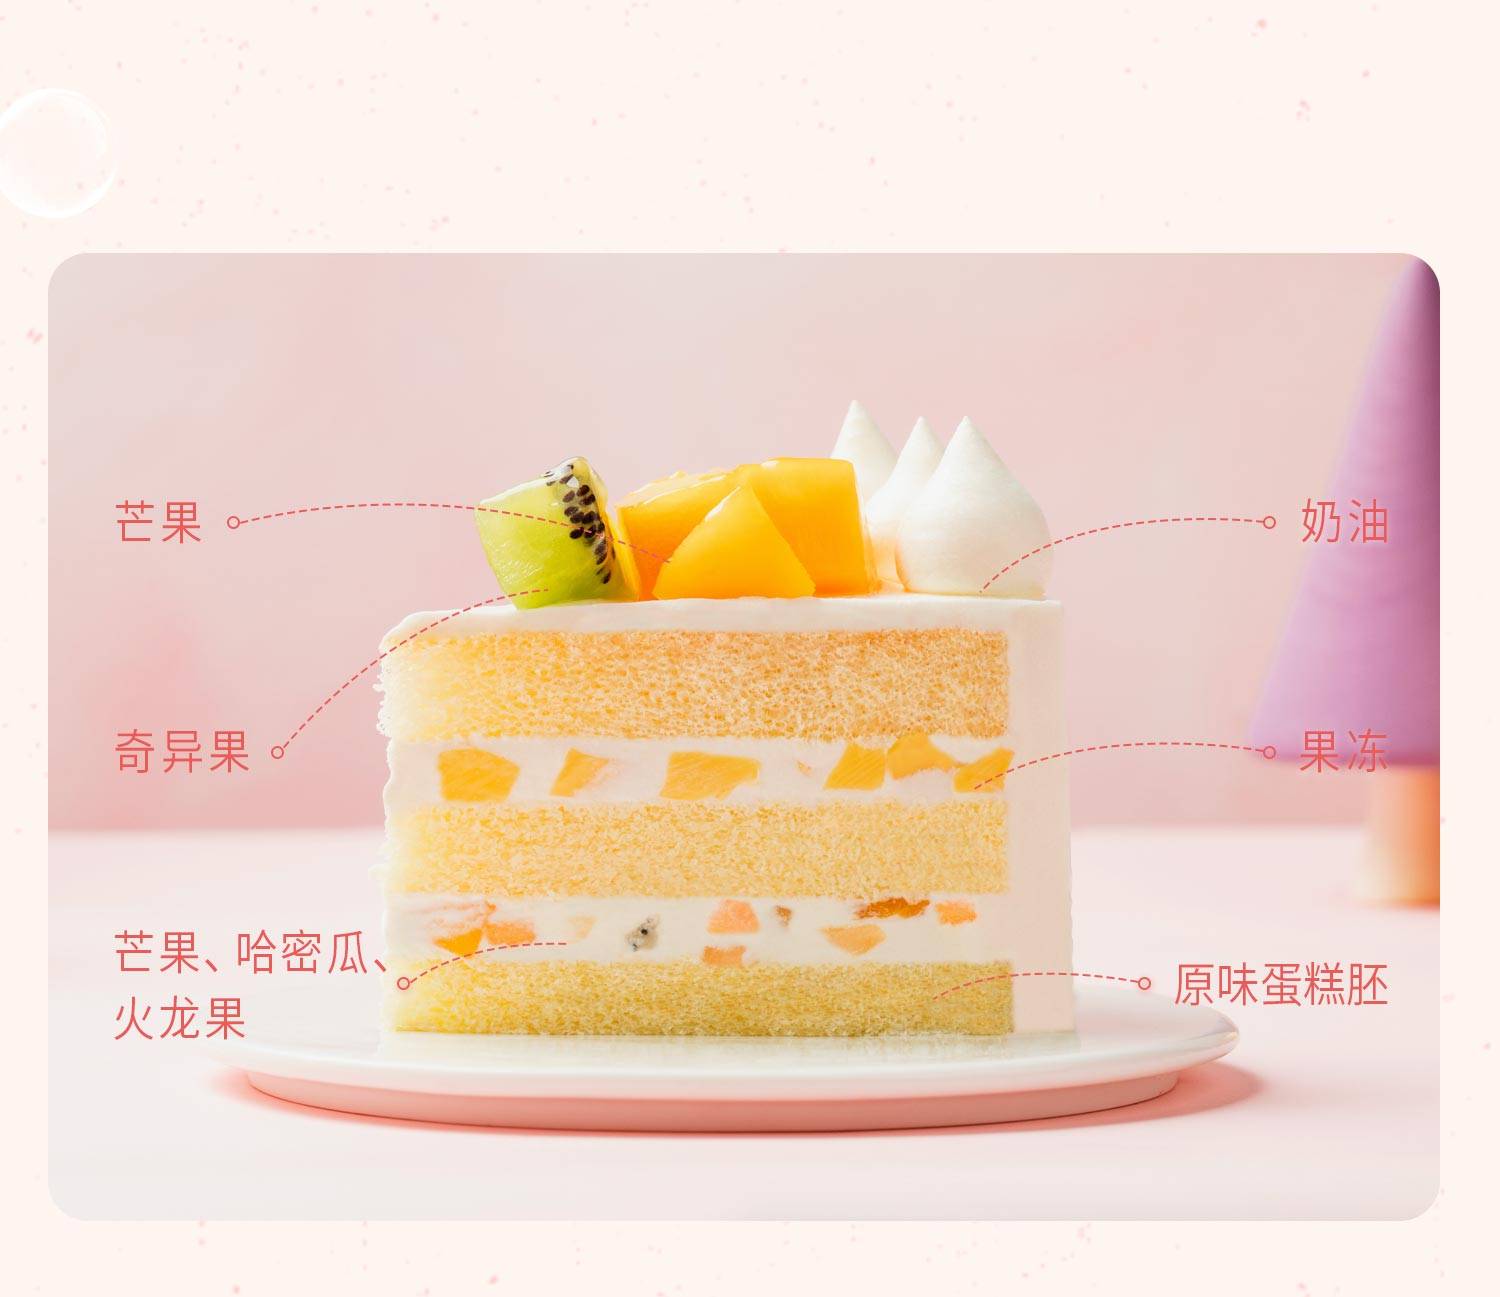 恐龙快跑_幸福西饼蛋糕预定_加盟幸福西饼_深圳幸福西饼官方网站